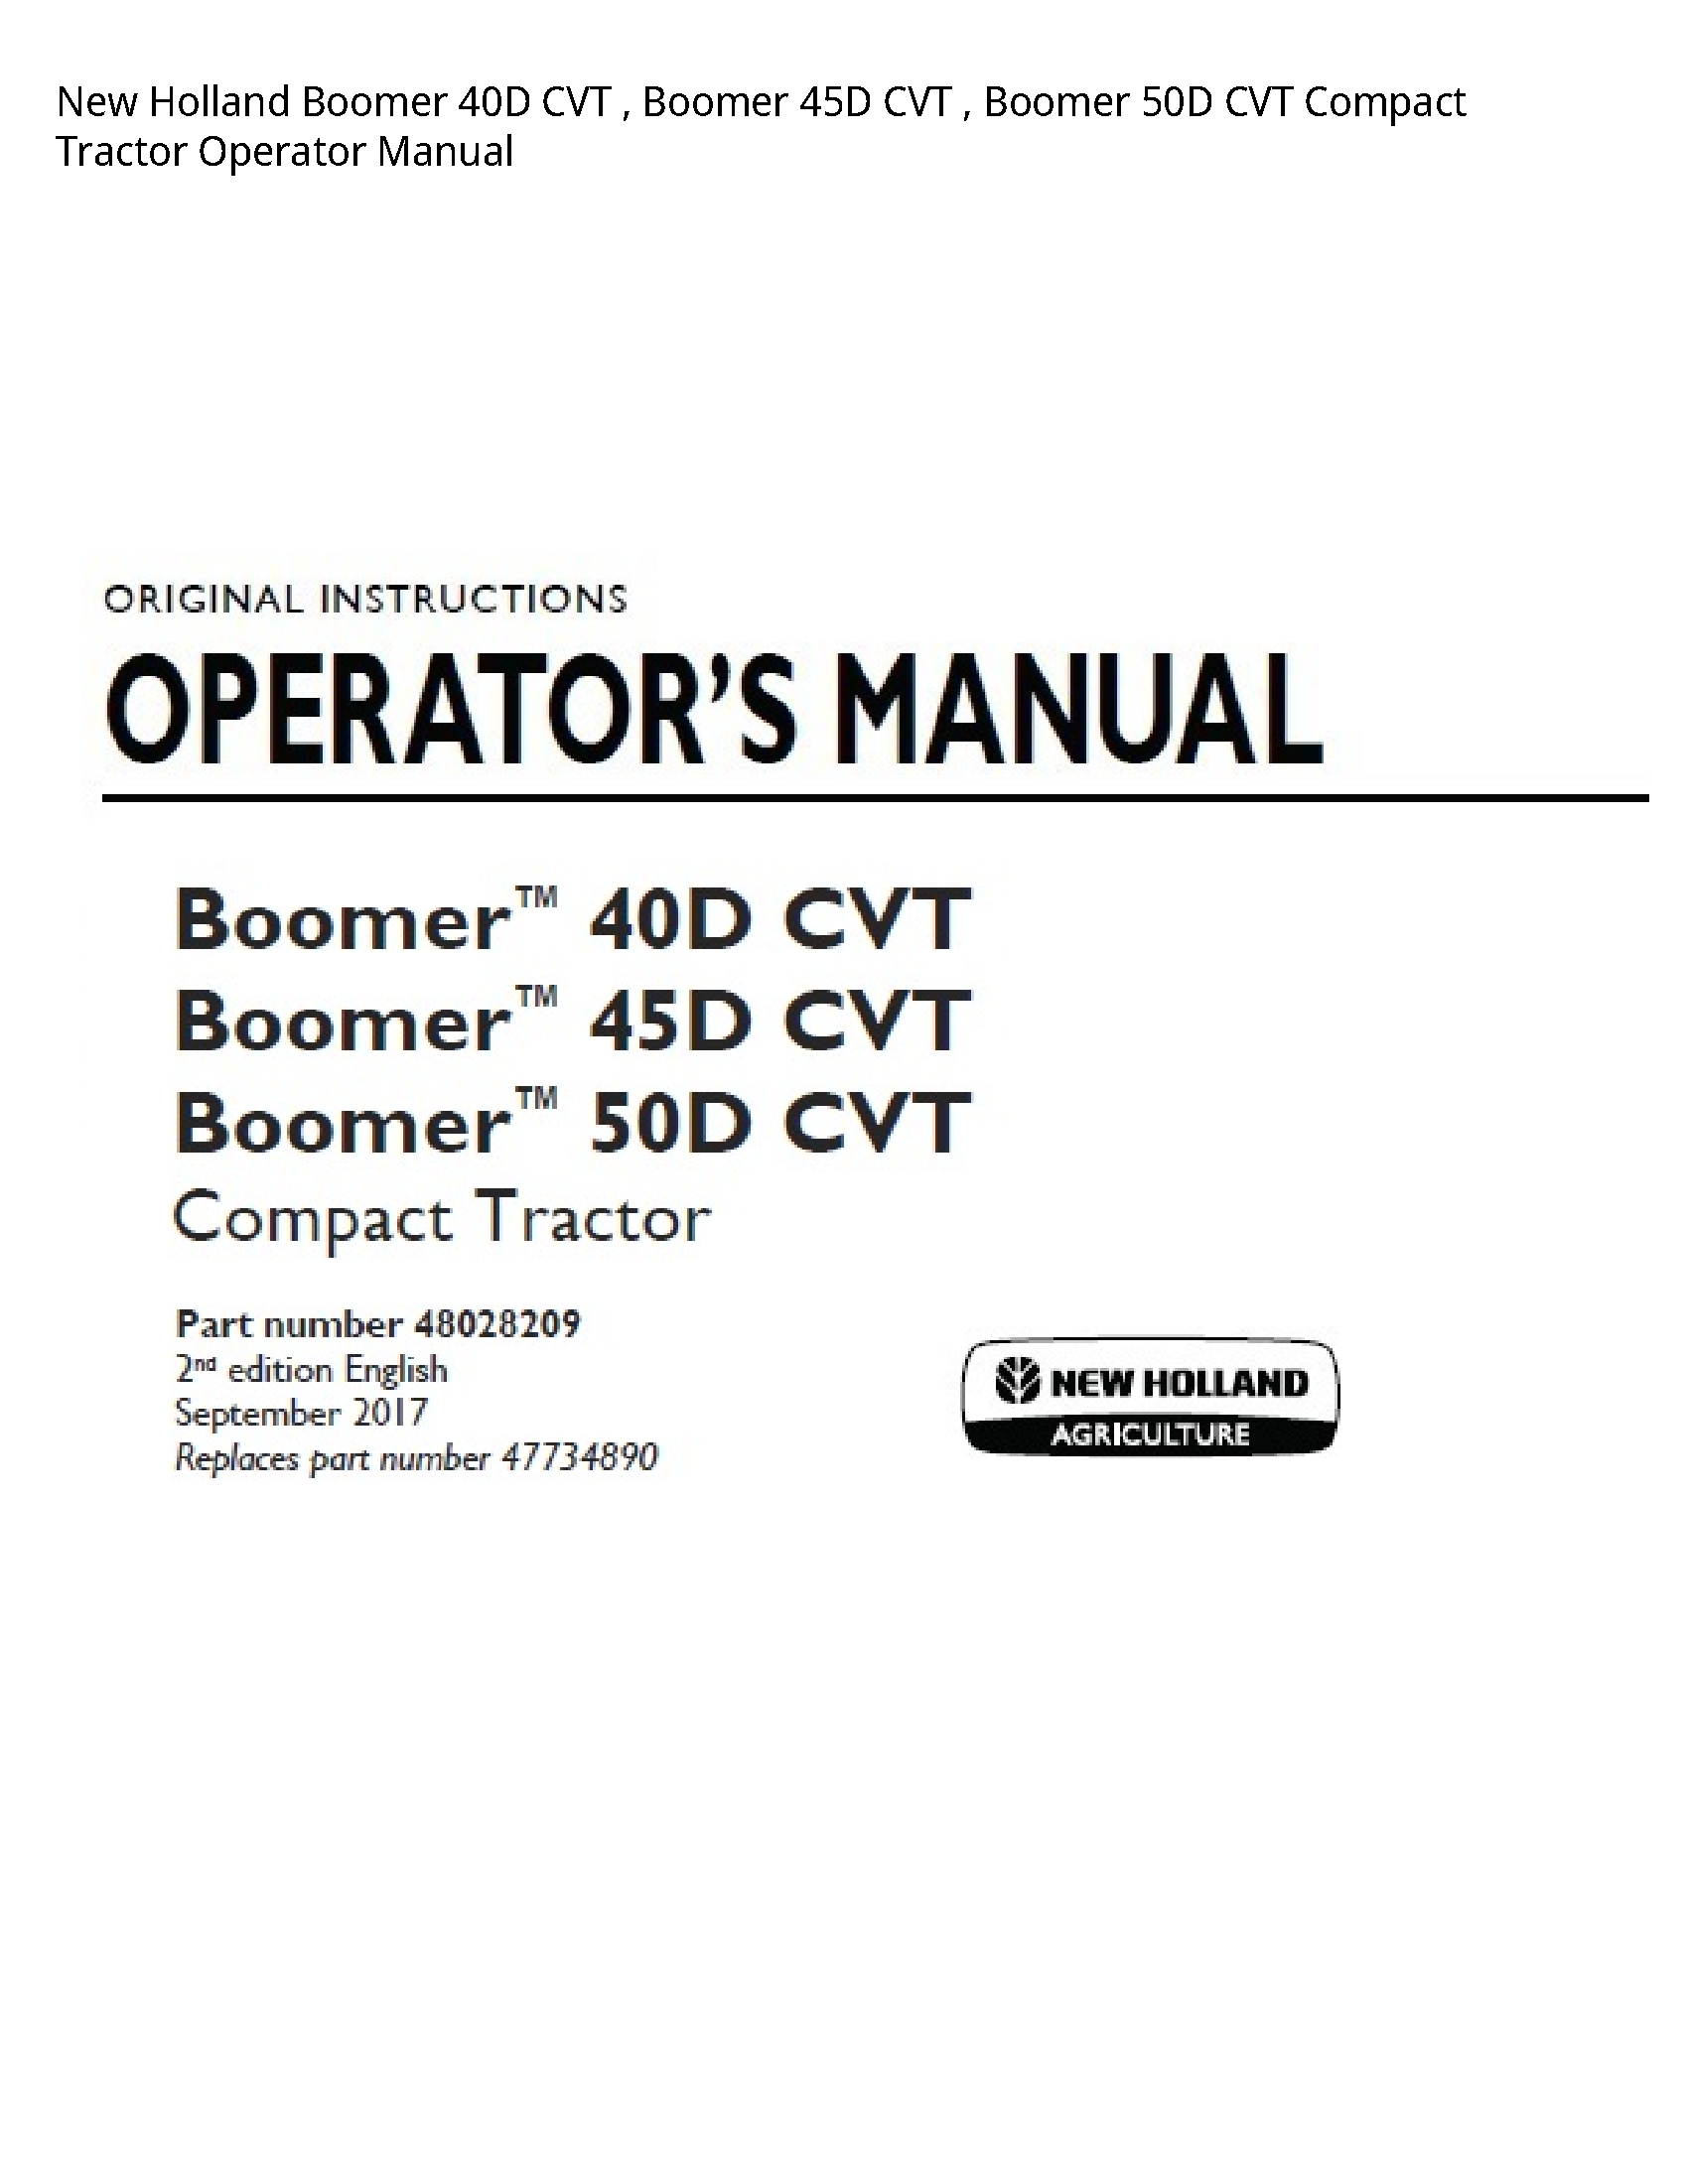 New Holland 40D Boomer CVT Boomer CVT Boomer CVT Compact Tractor Operator manual